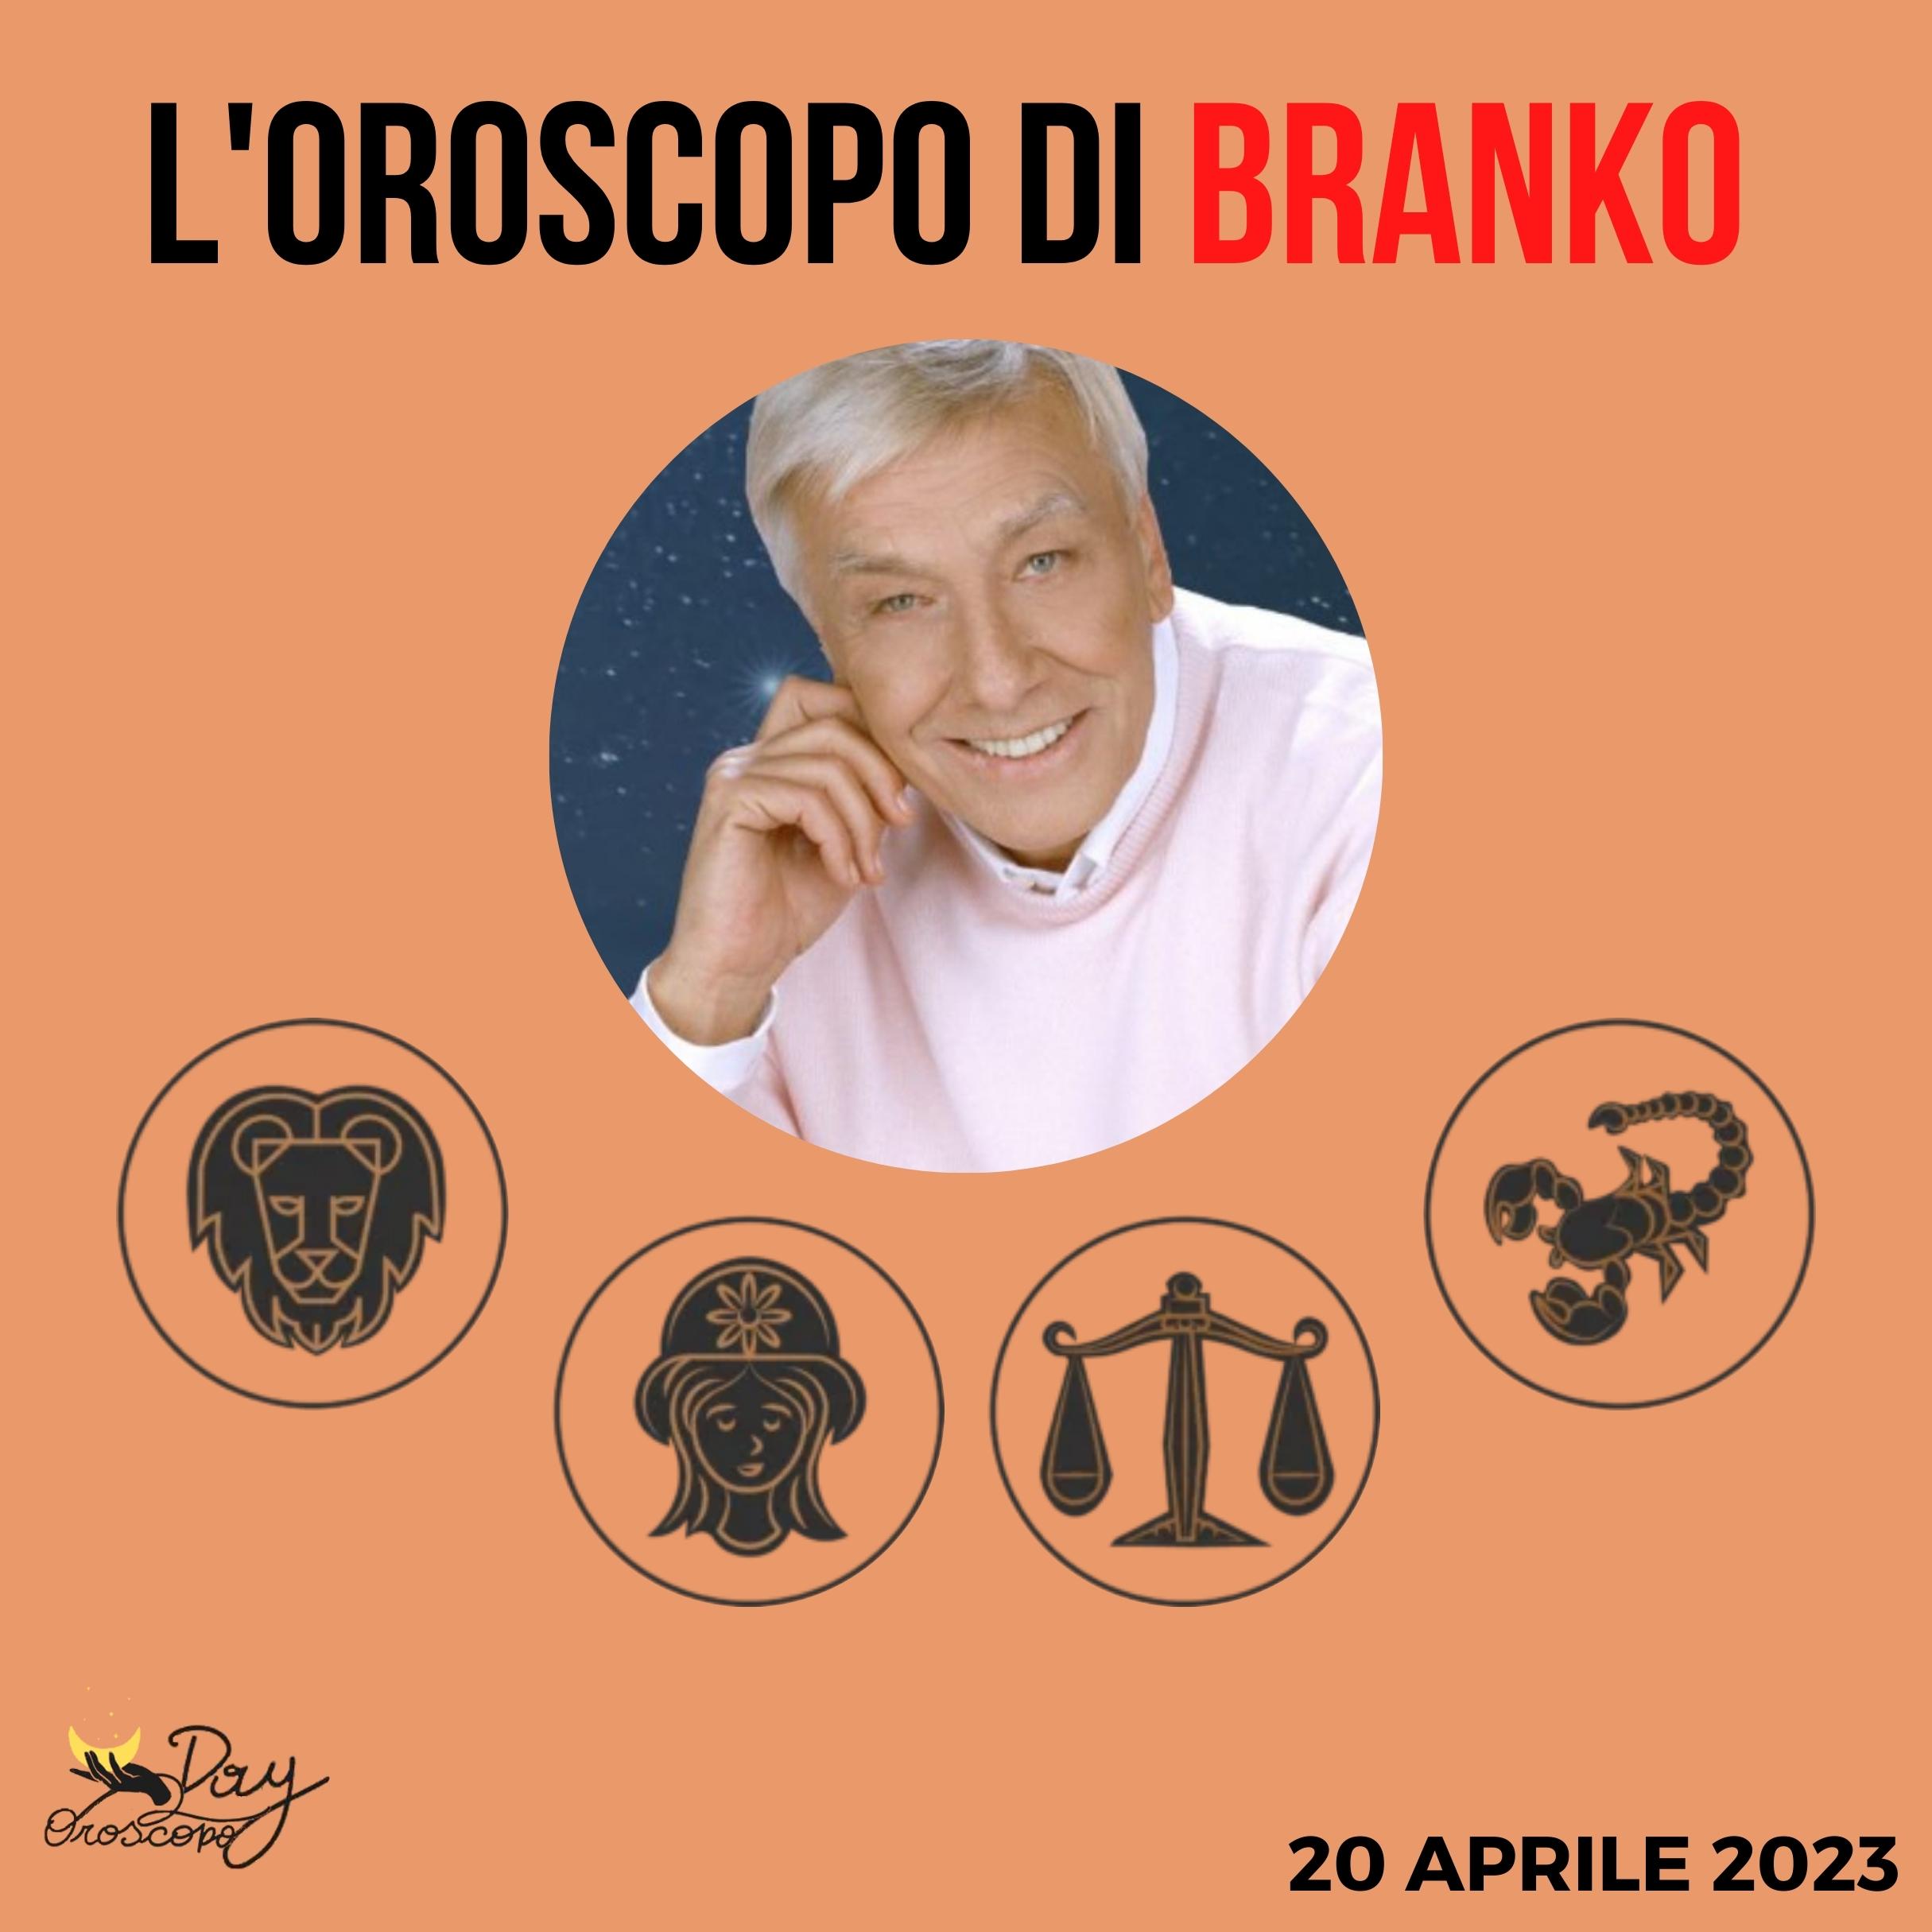 Oroscopo oggi domani Branko 20 aprile Leone Vergine Bilancia Scorpione